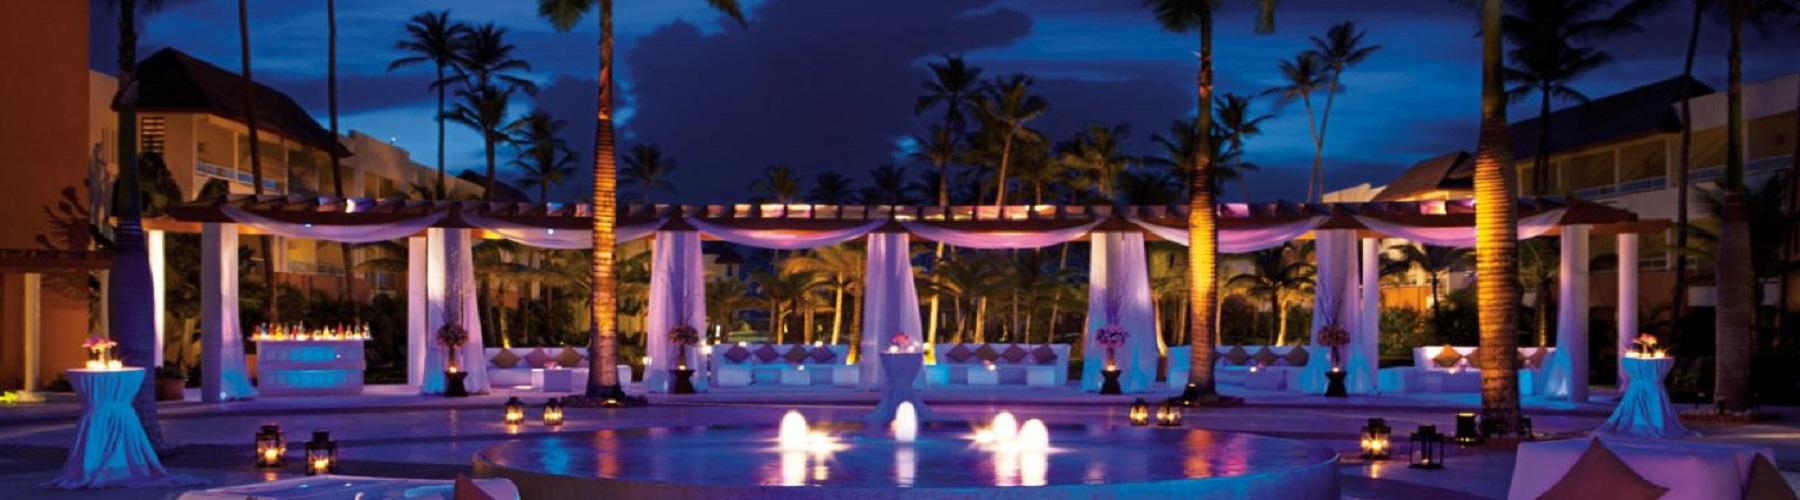 Отель Secrets Royal Beach Punta Cana в Доминикане